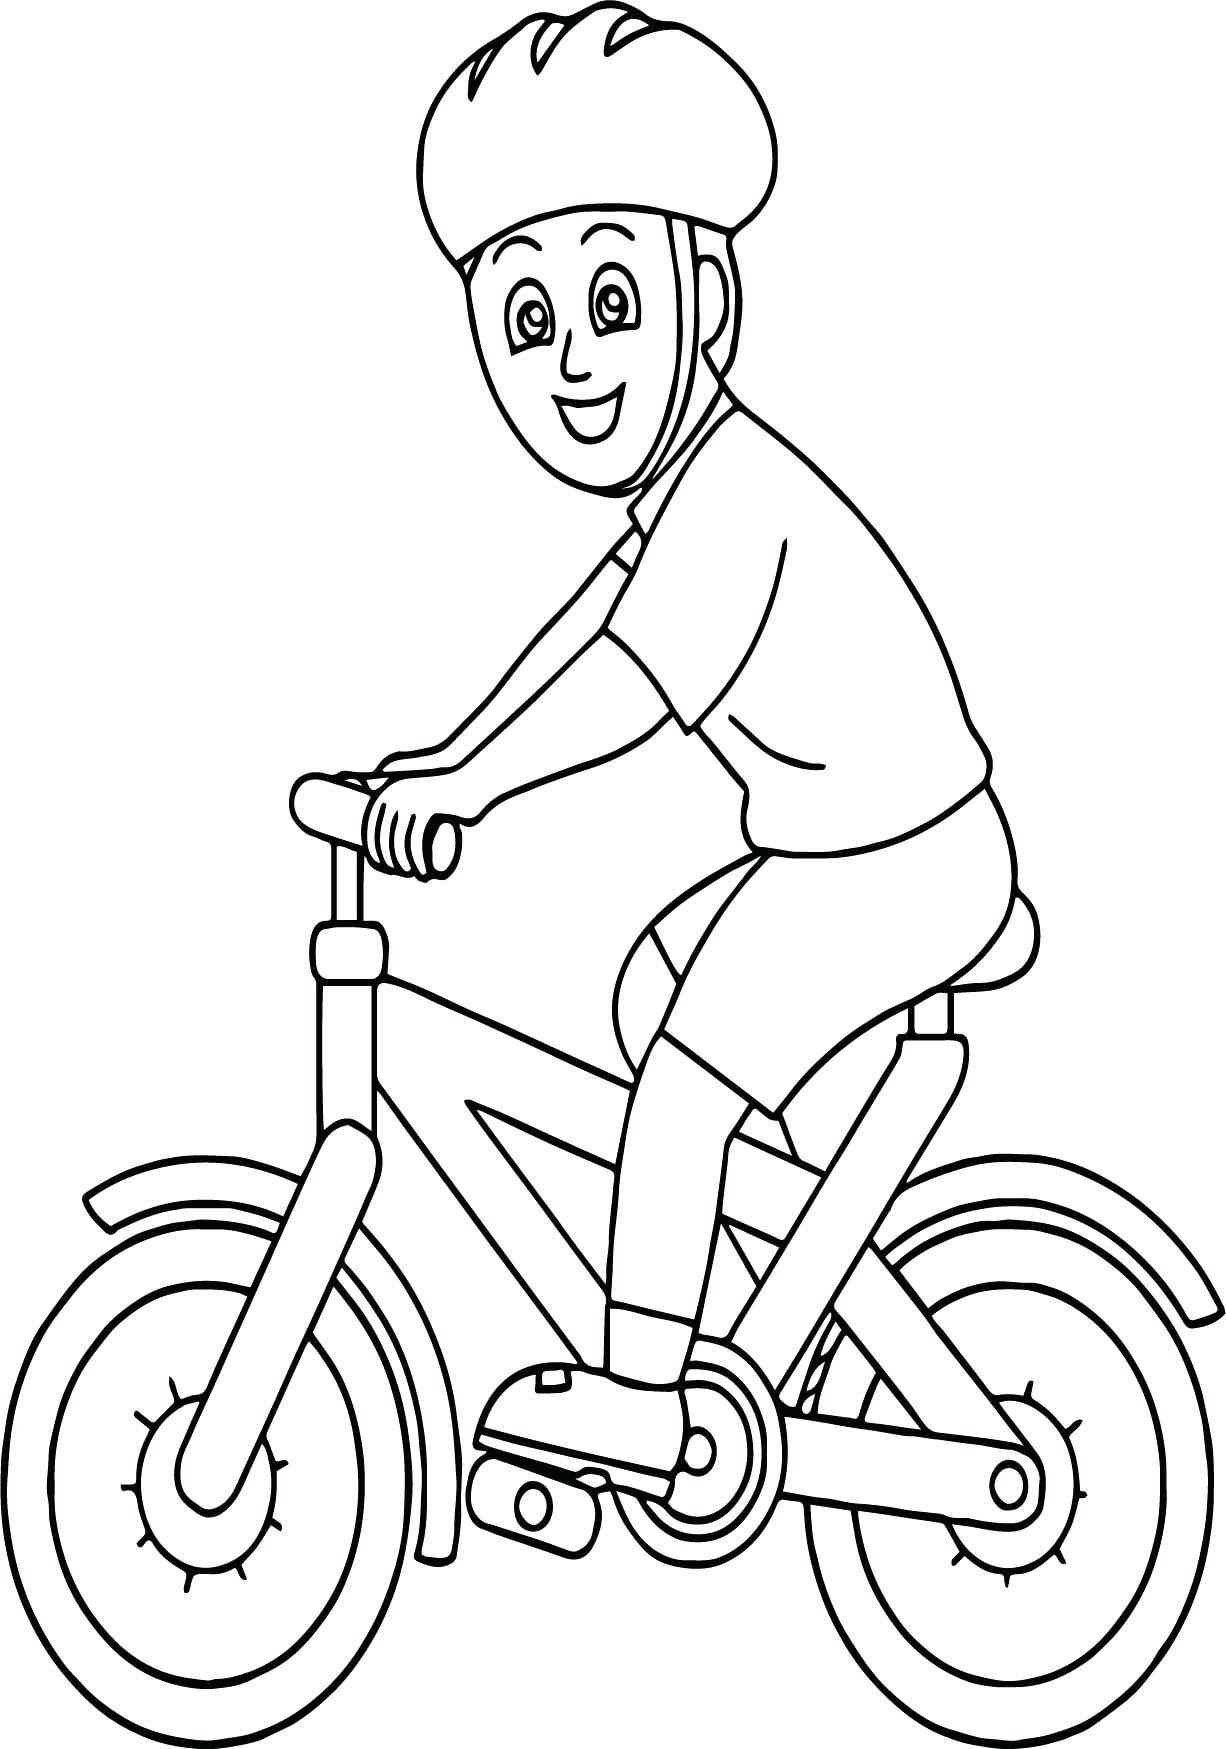 Bike Helmet Coloring Page Bike Coloring Sheet Deucesheetco